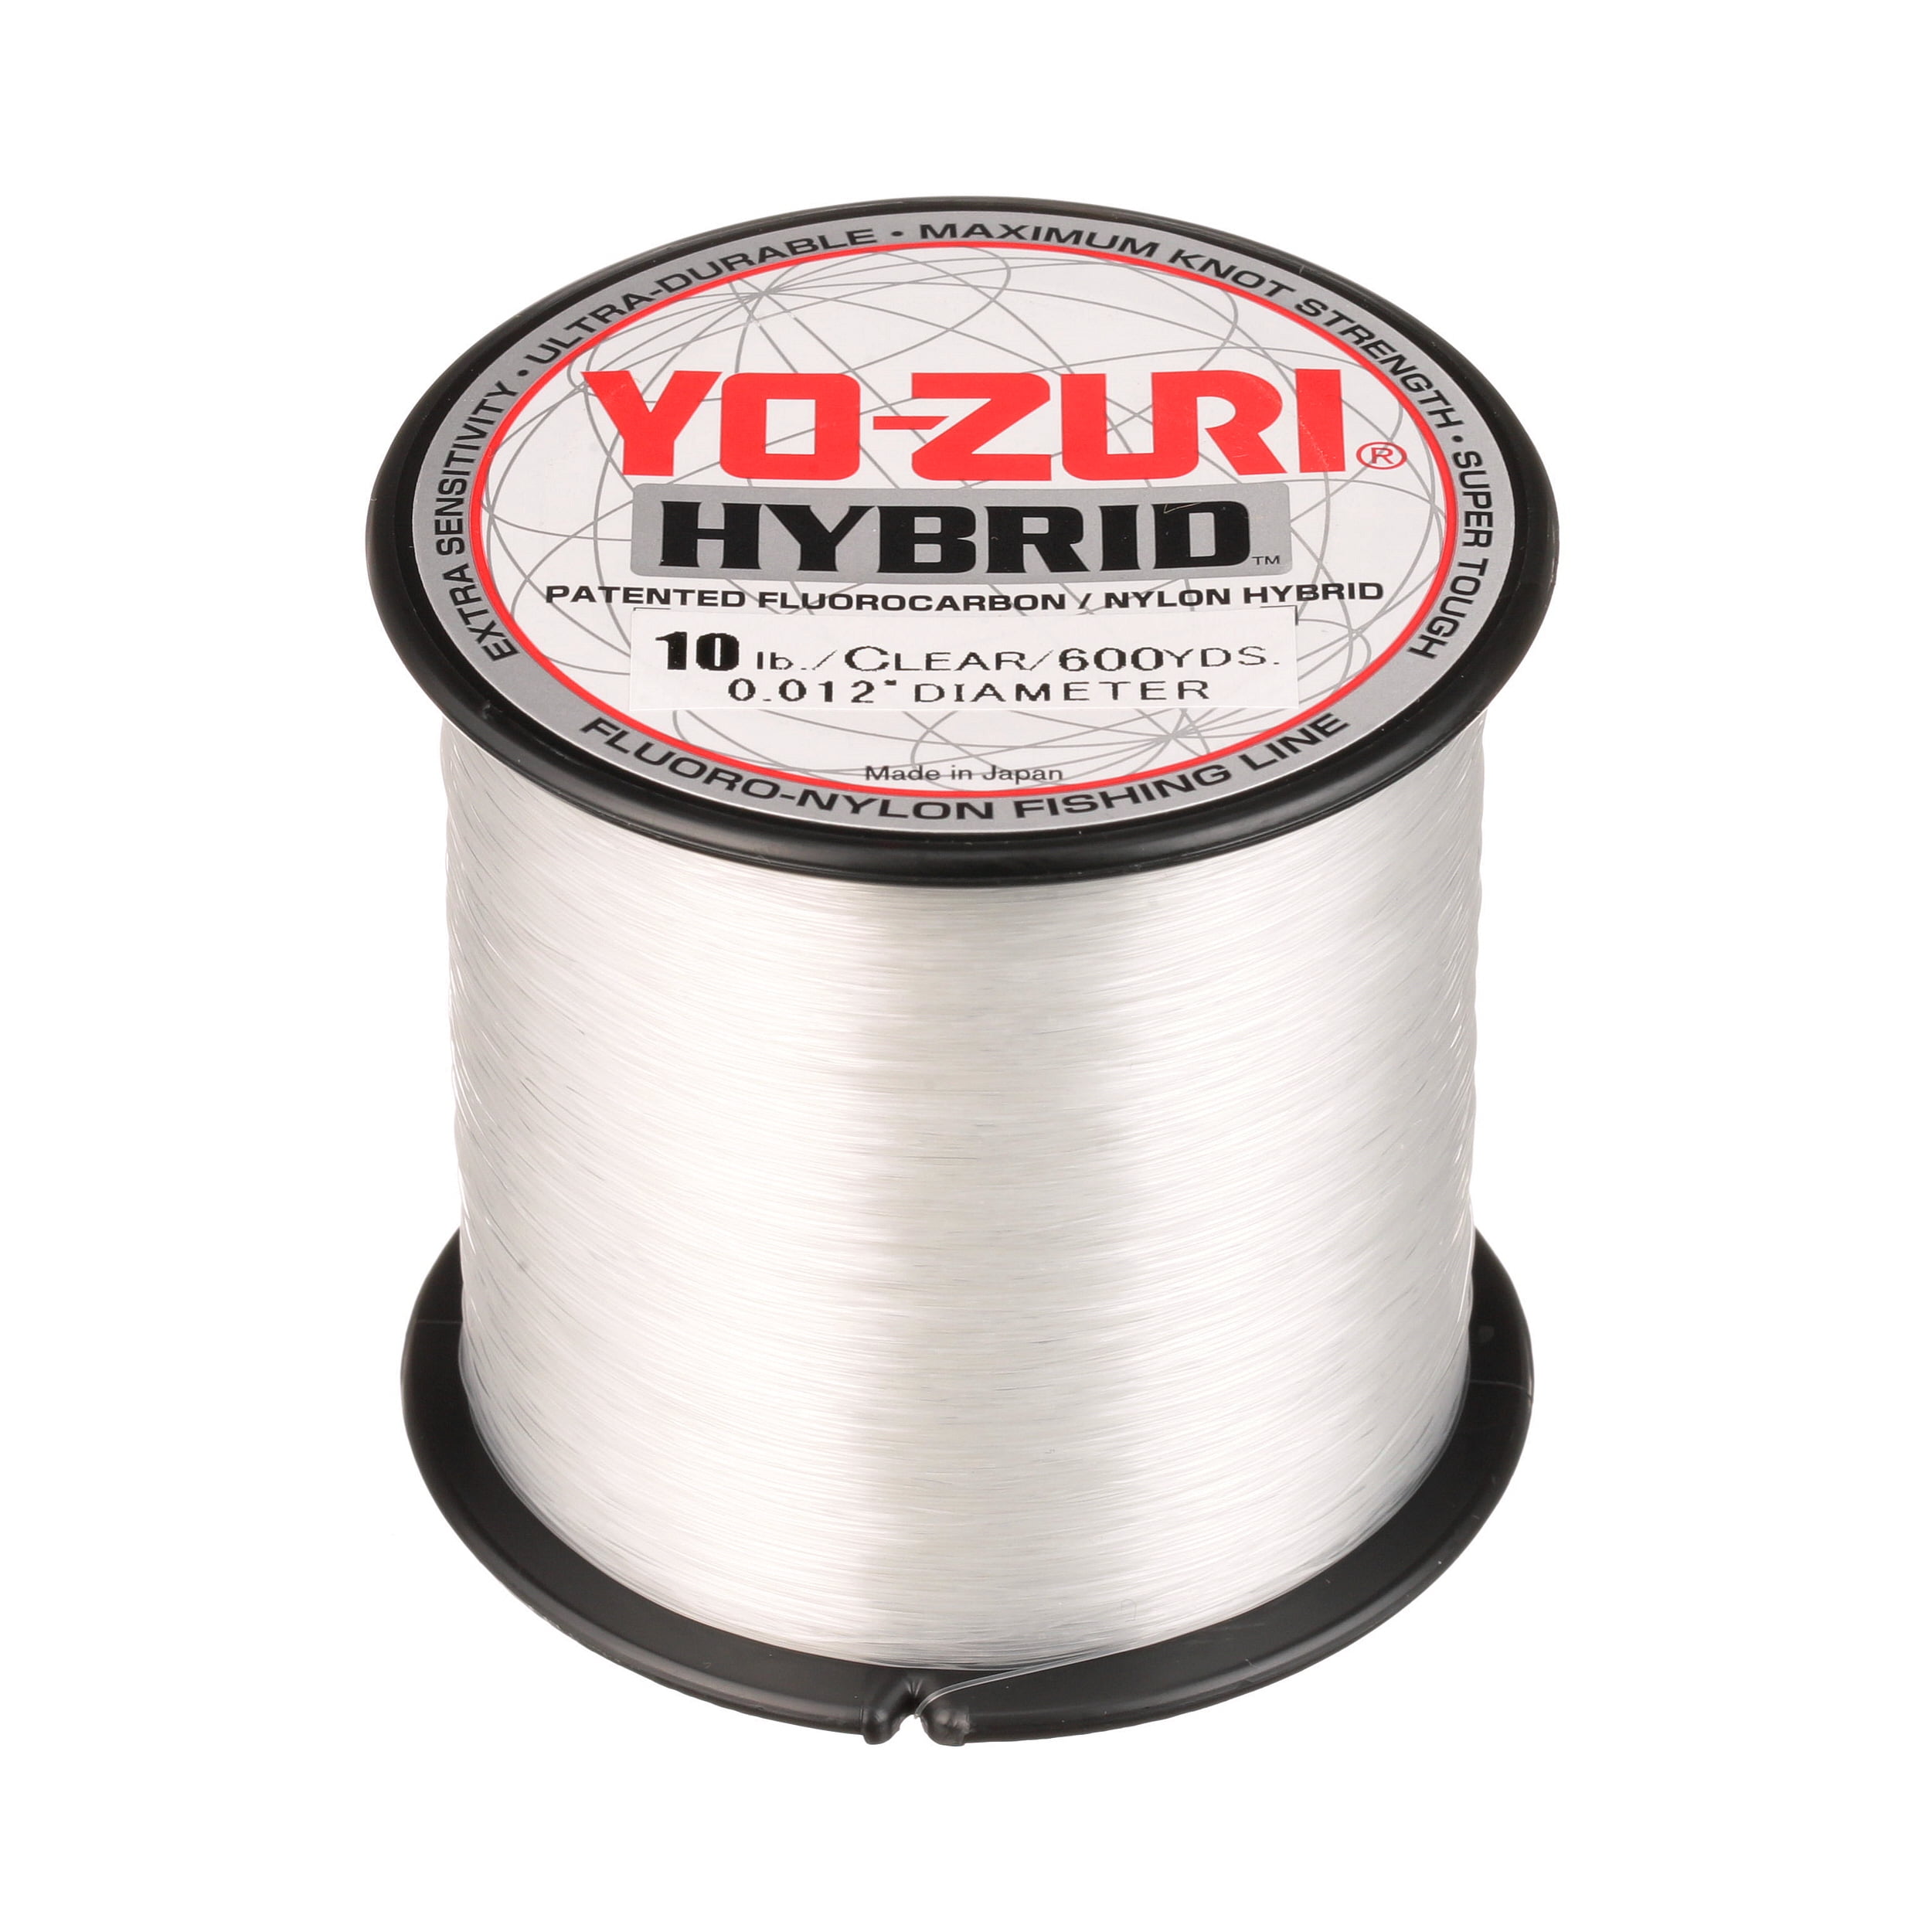 2 Spools Yo-Zuri Hybrid Fishing Line 275yd Clear for sale online 